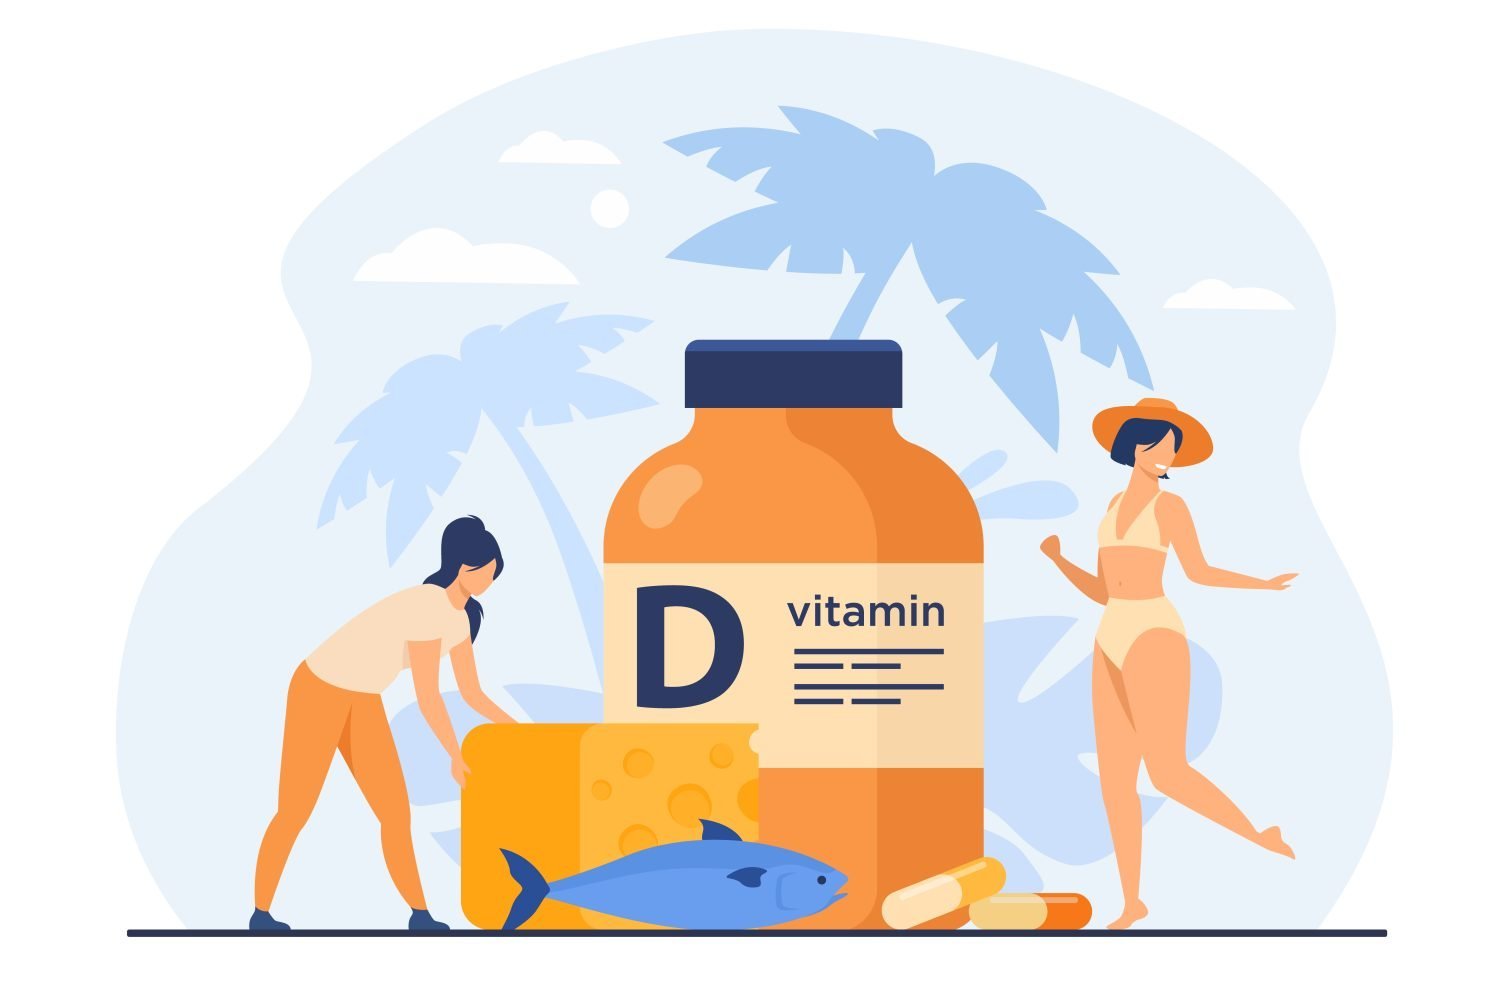 Ilustración de mujeres adquiriendo vitamina D para evitar la deficiencia, a través del sol, los alimentos y suplementos